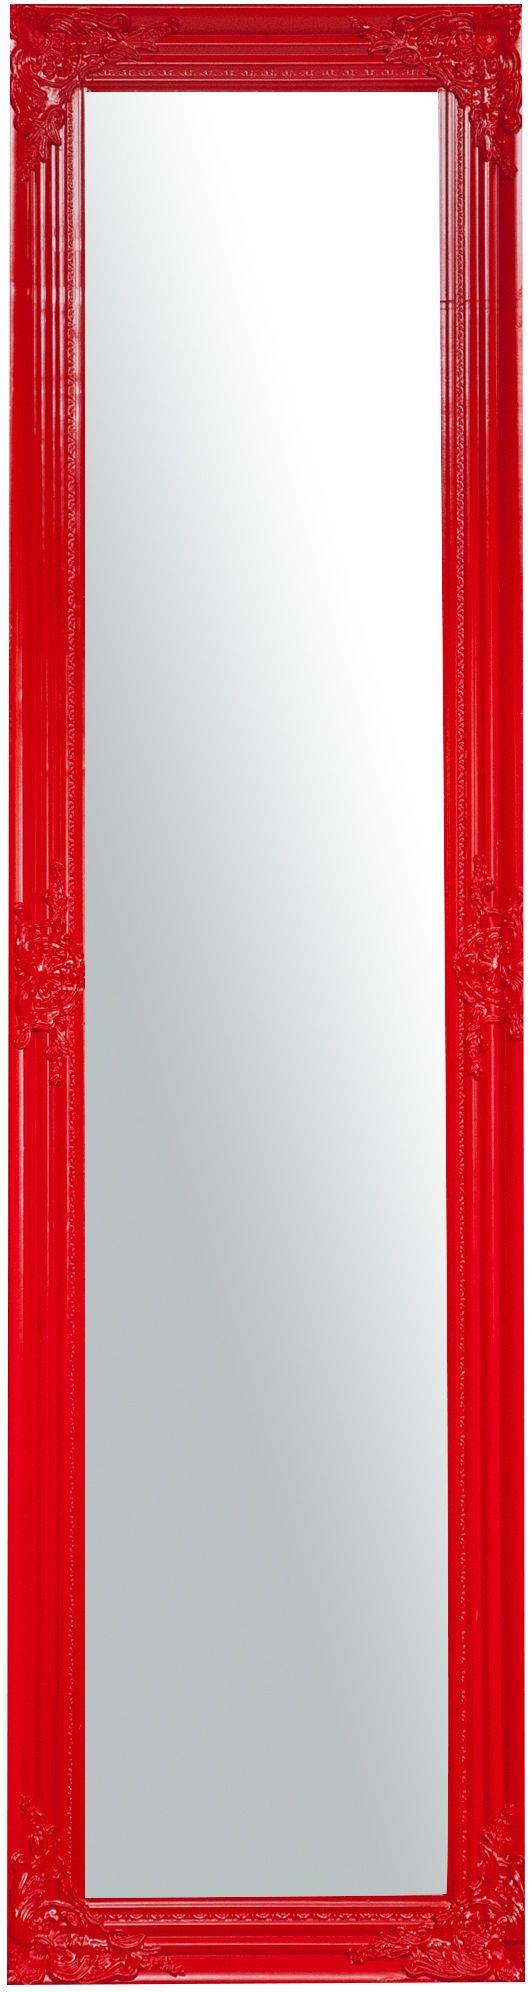 Specchio da terra 164x44x3 cm Made in Italy Specchio lungo con cornice  rosso Specchio da terra camera da letto Specchio shabby - Biscottini - Idee  regalo | IBS